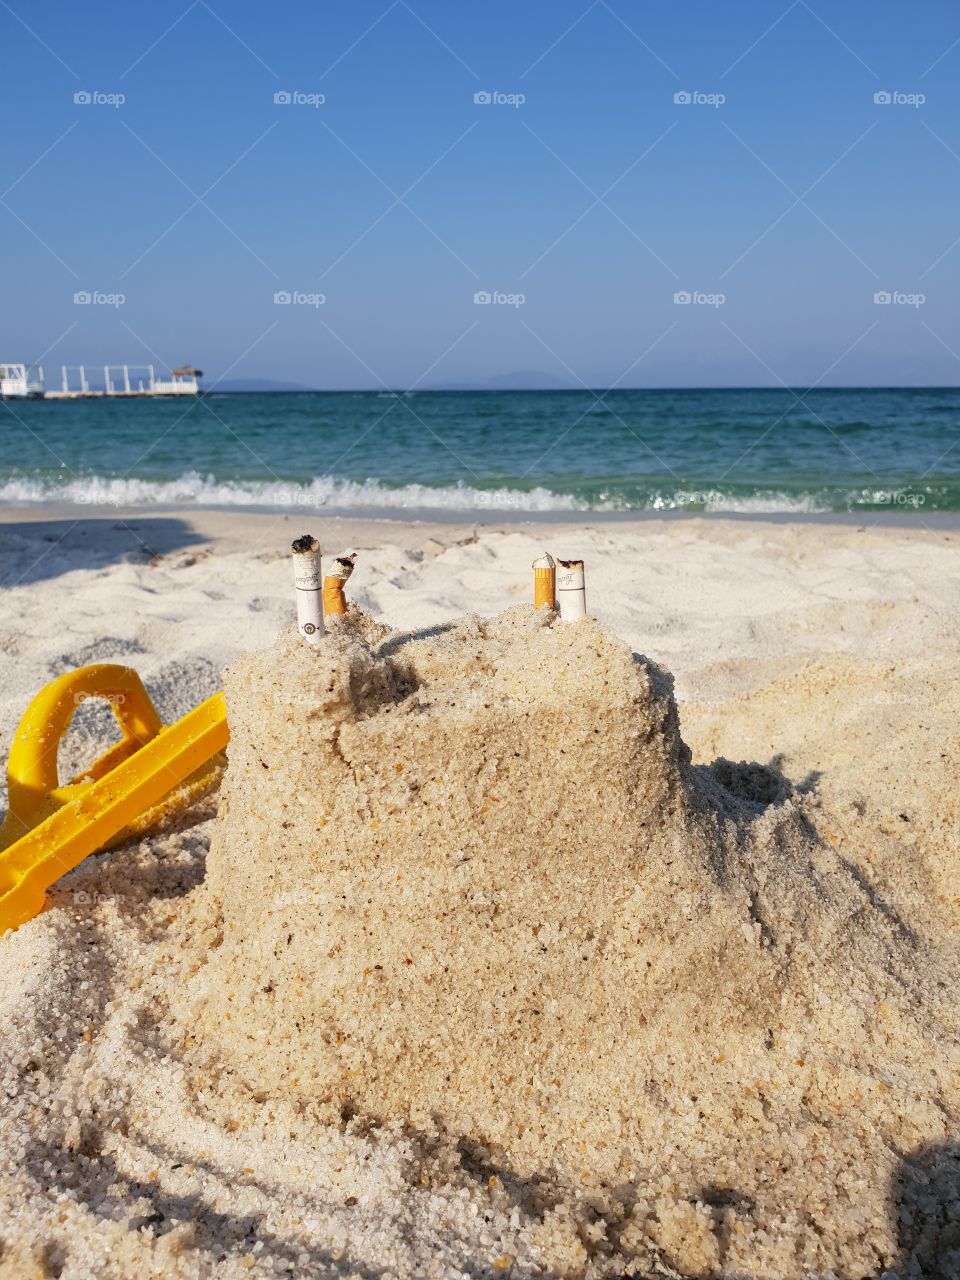 sandcastle on beach